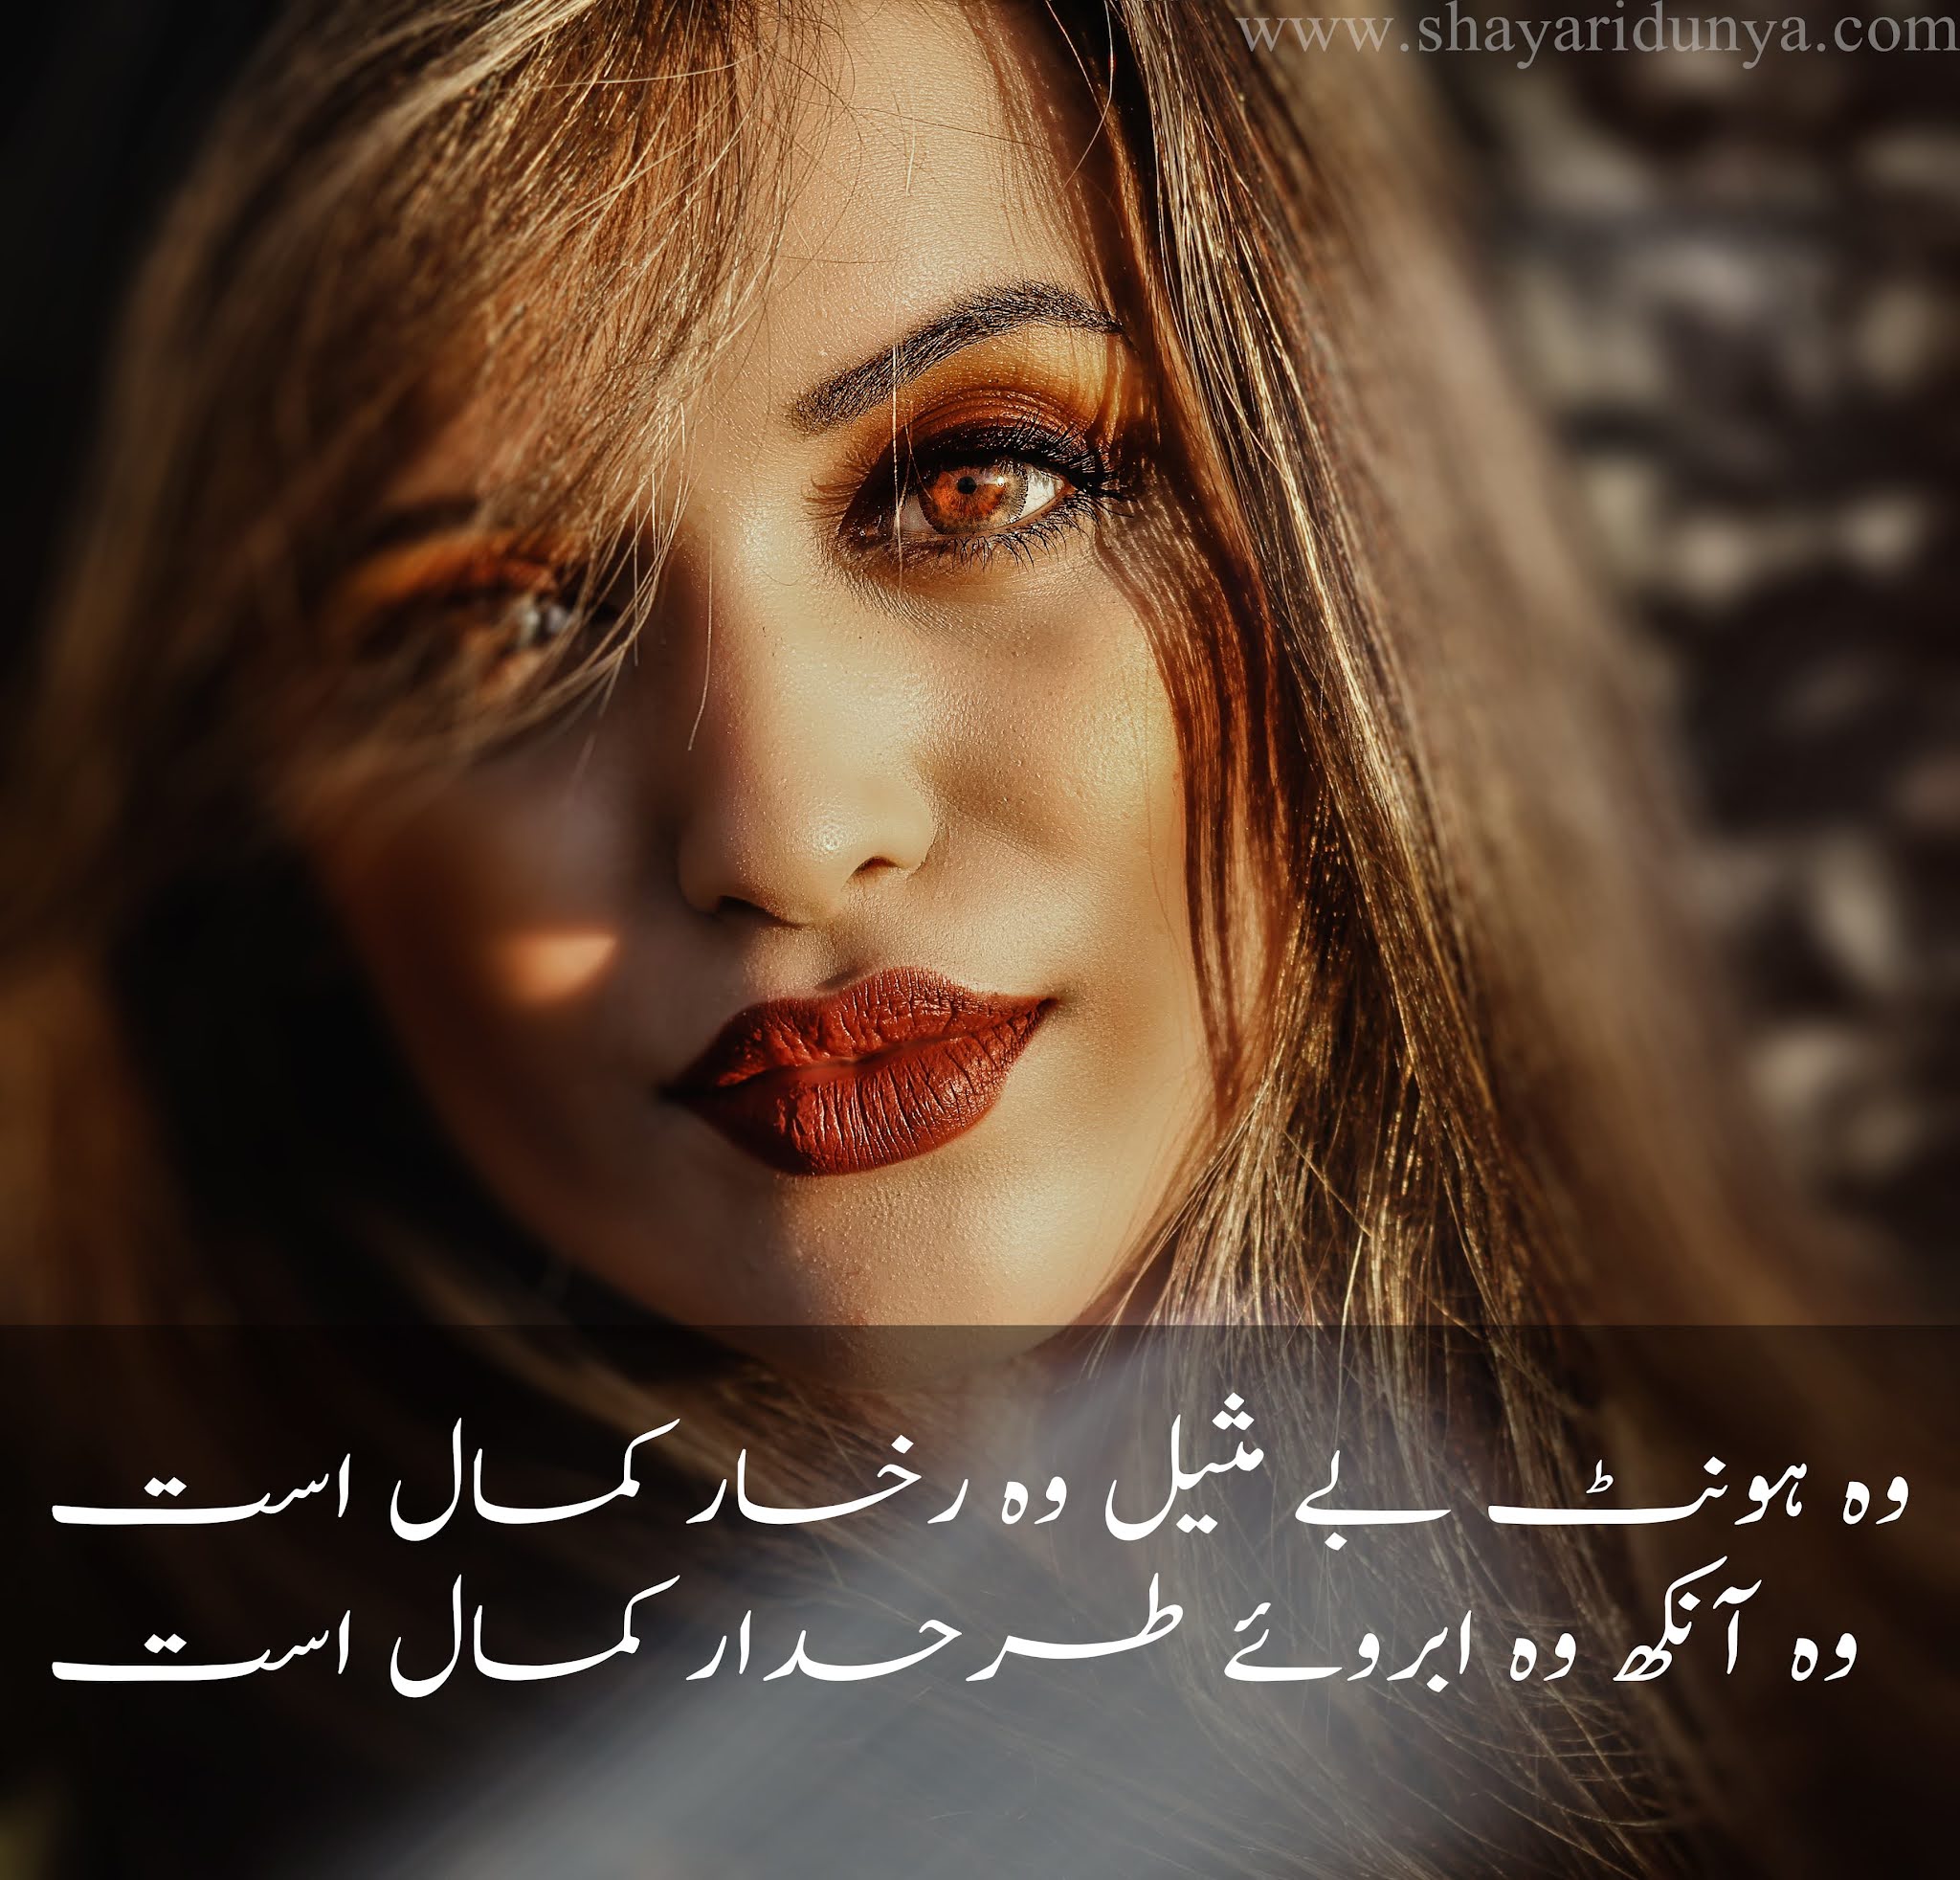 Lips Shayari | Lips Poetry in Urdu | Poetry on lips | Shayari on lips | hont poetry 2 lines